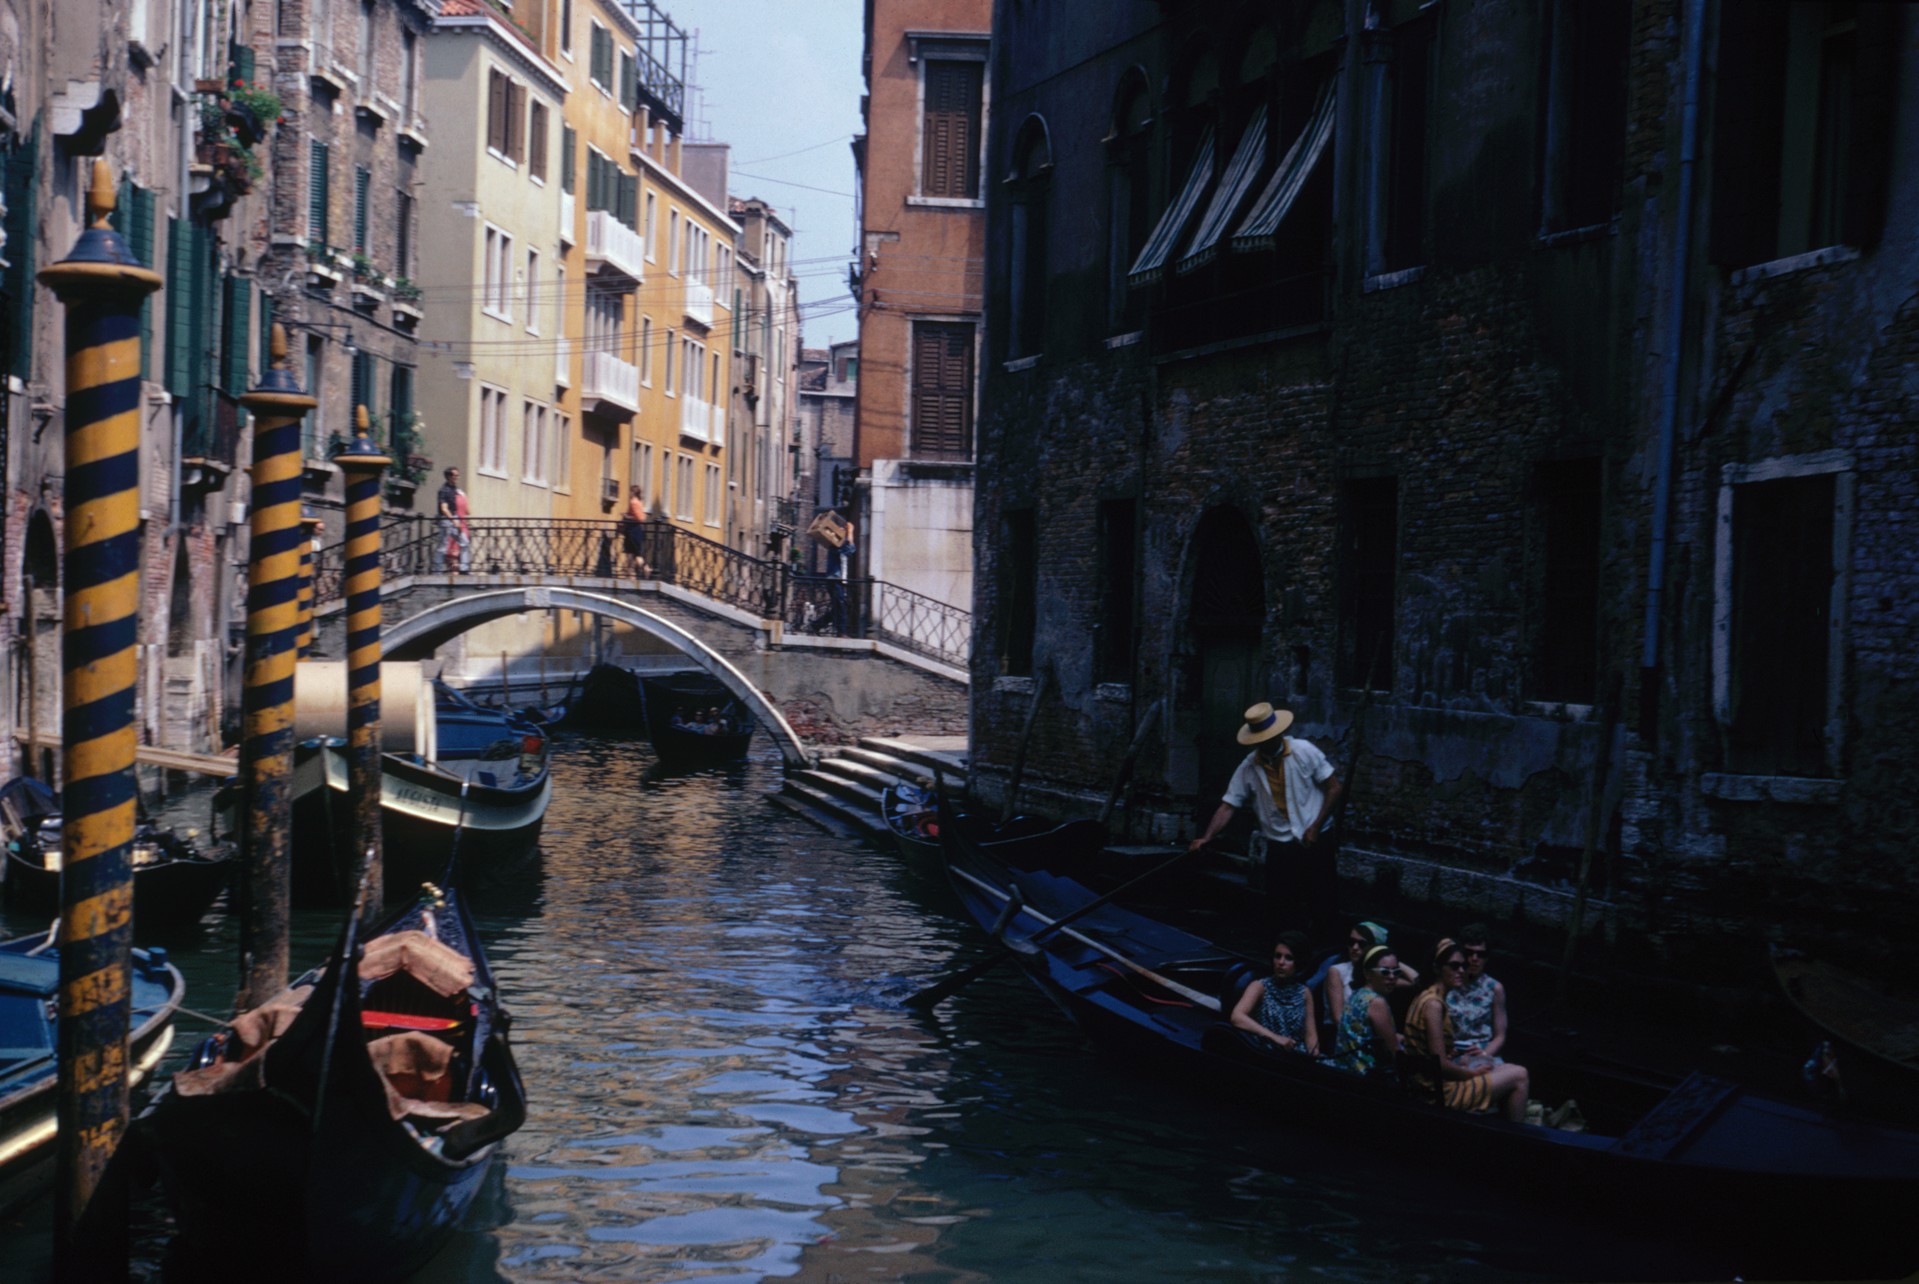 Venetian Scene by Slim Aarons